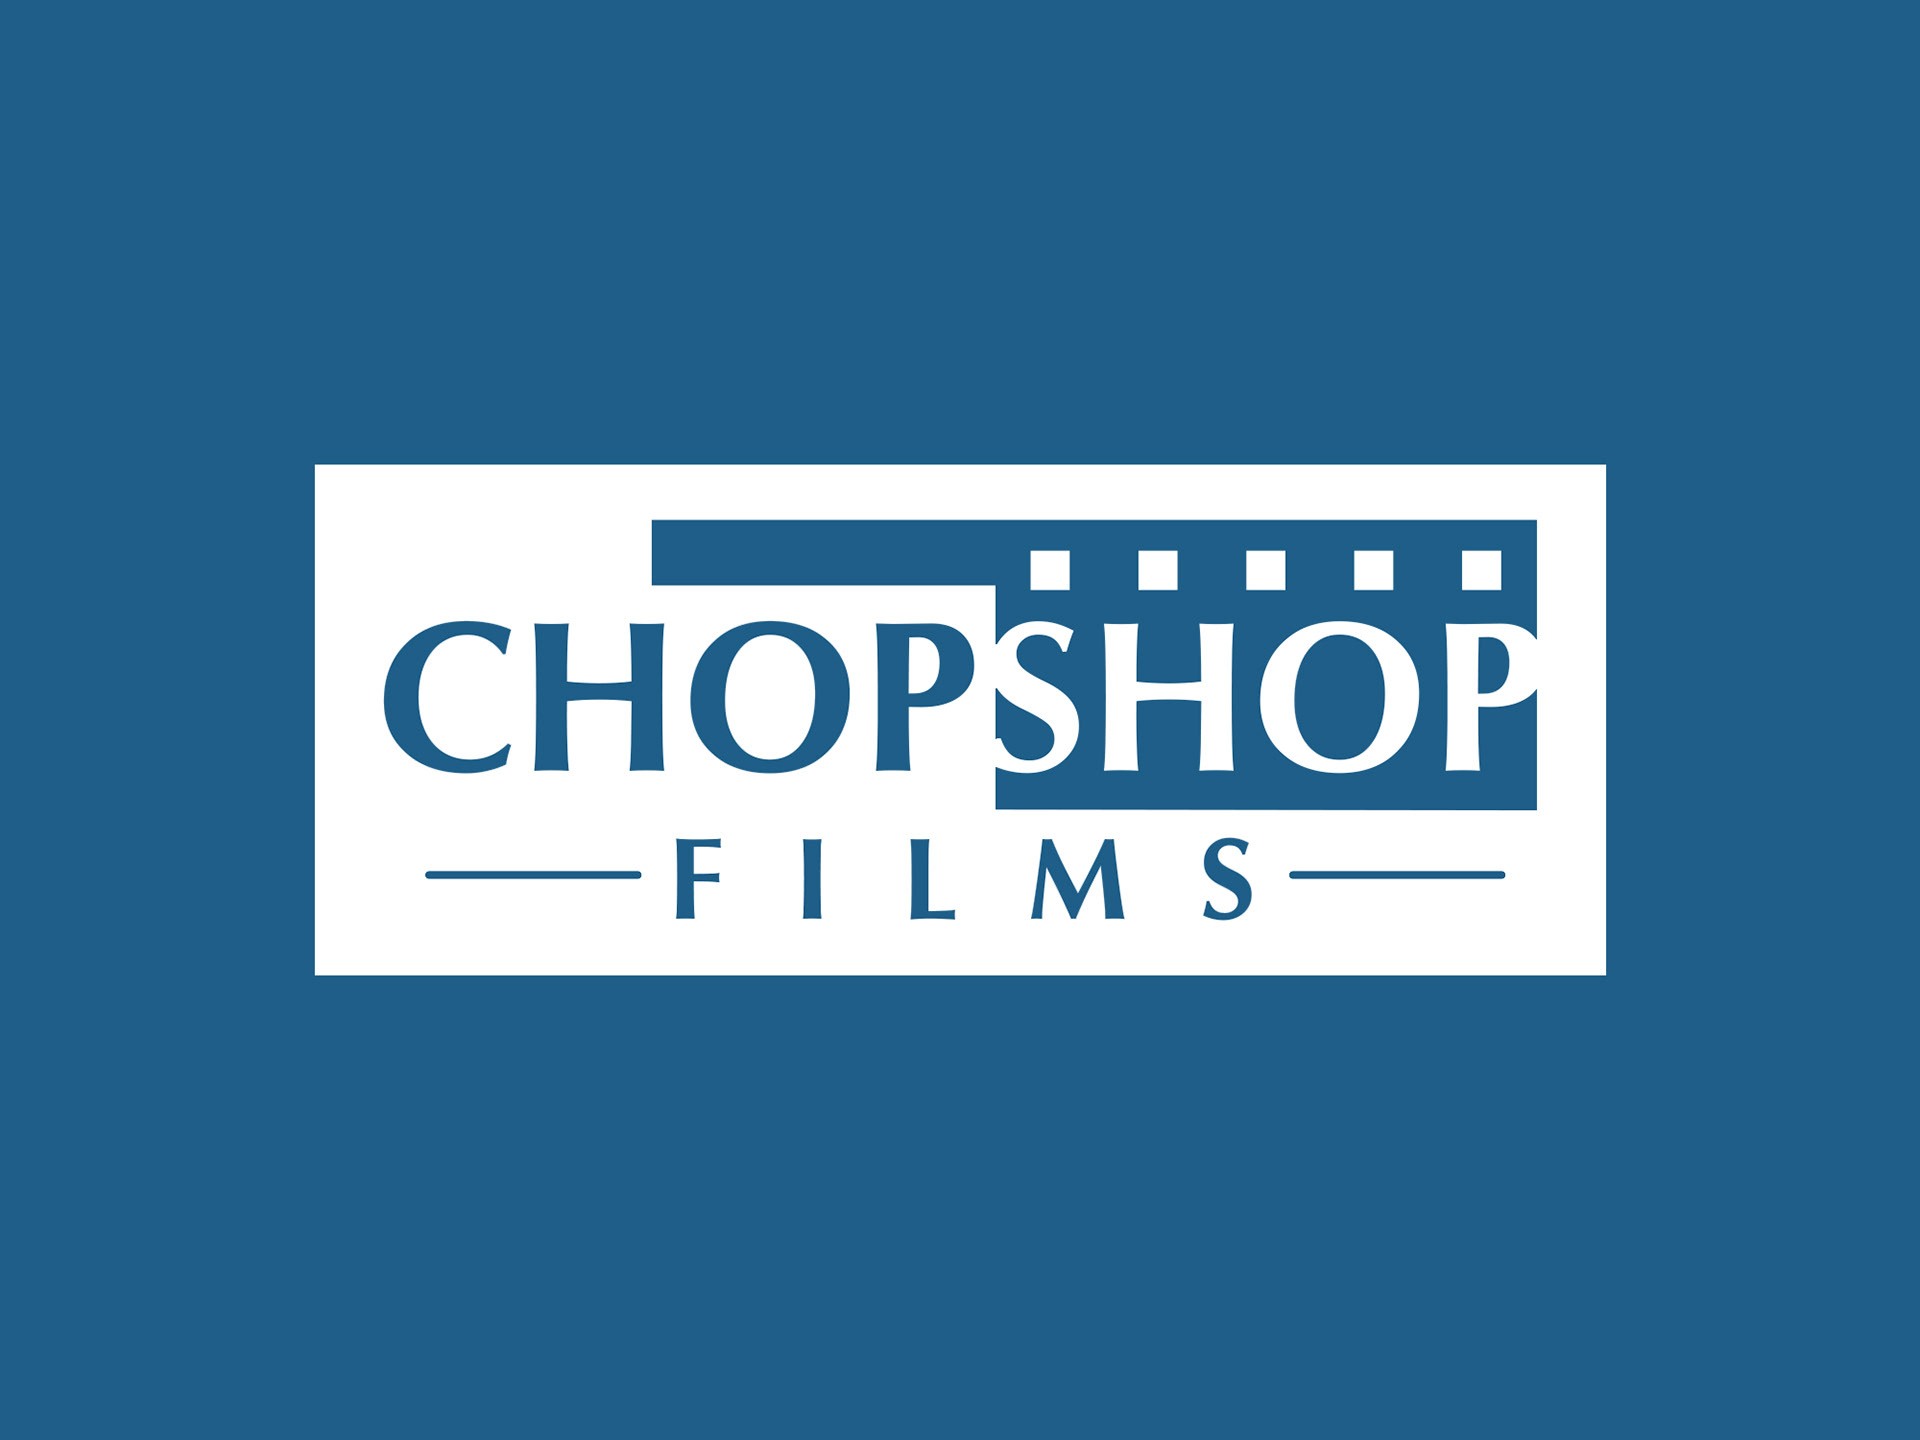 Chop Shop Films